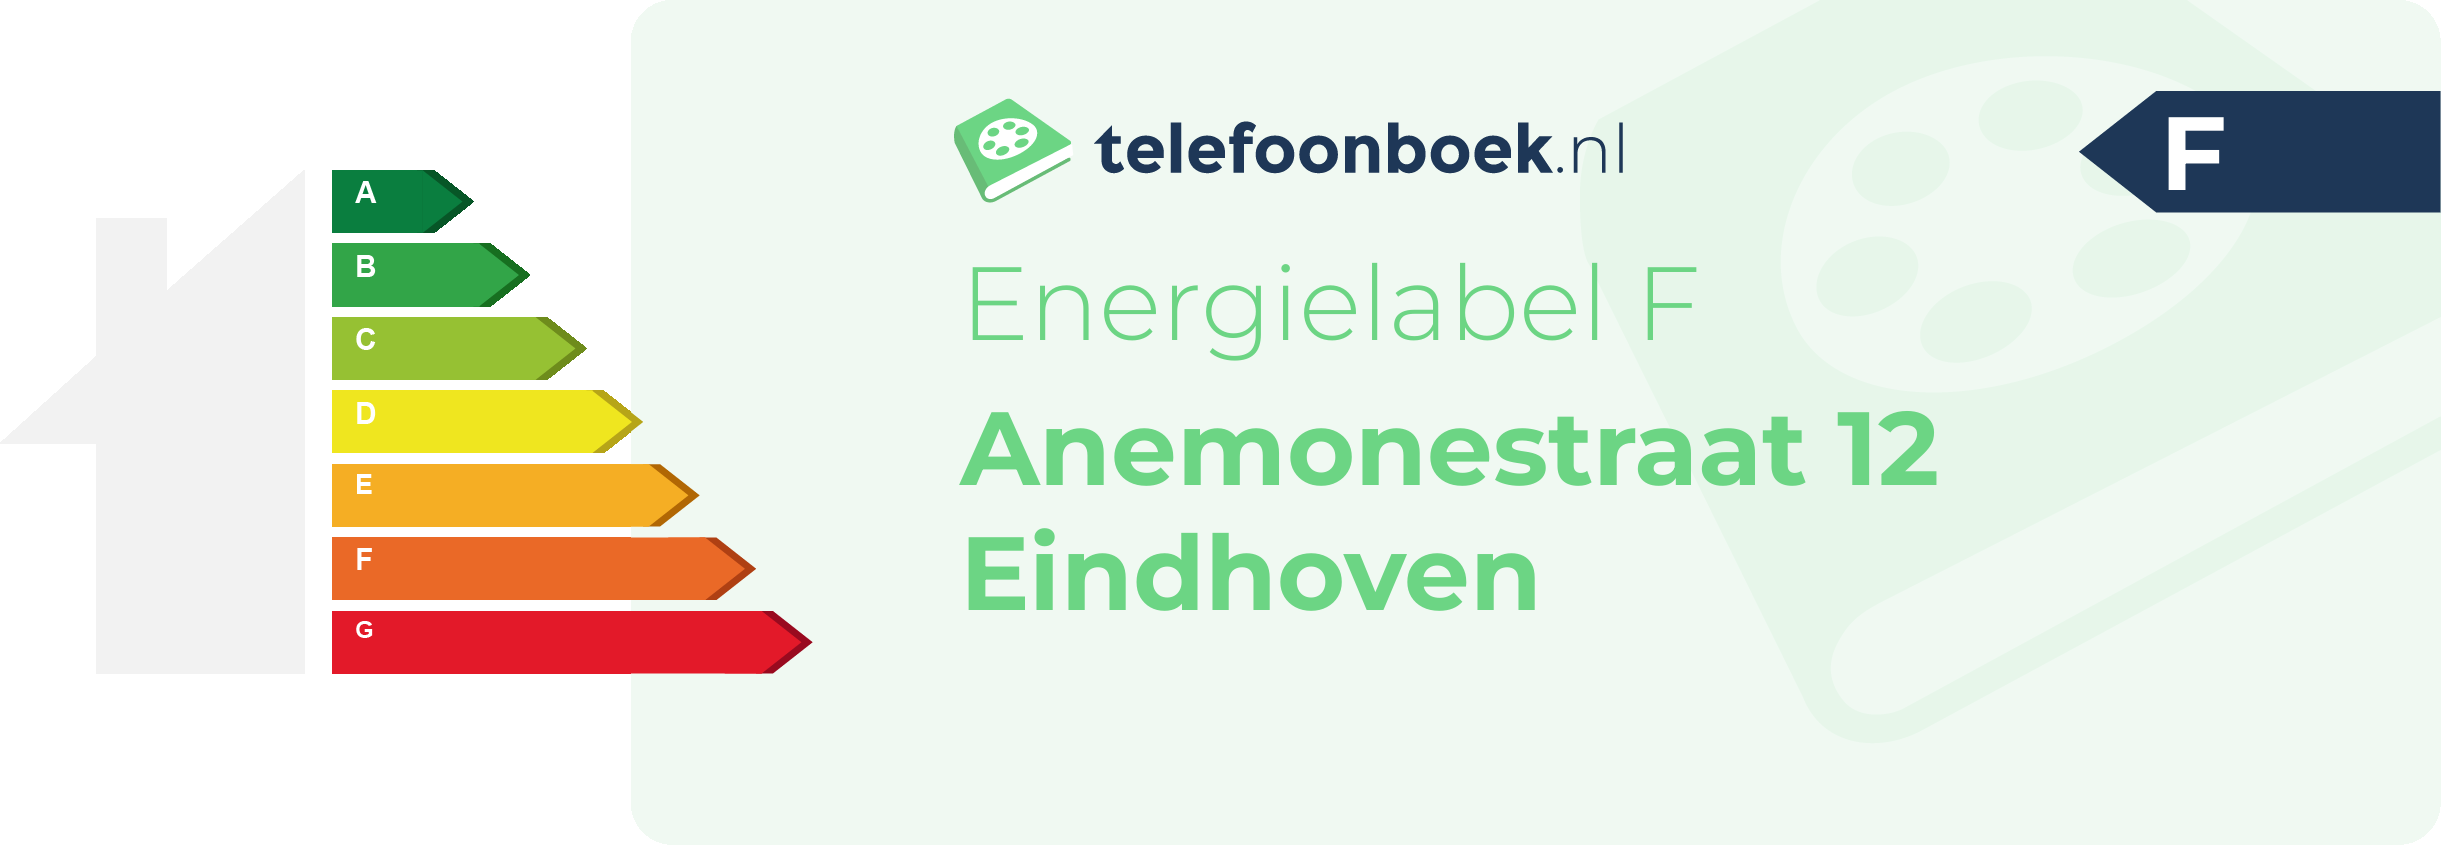 Energielabel Anemonestraat 12 Eindhoven